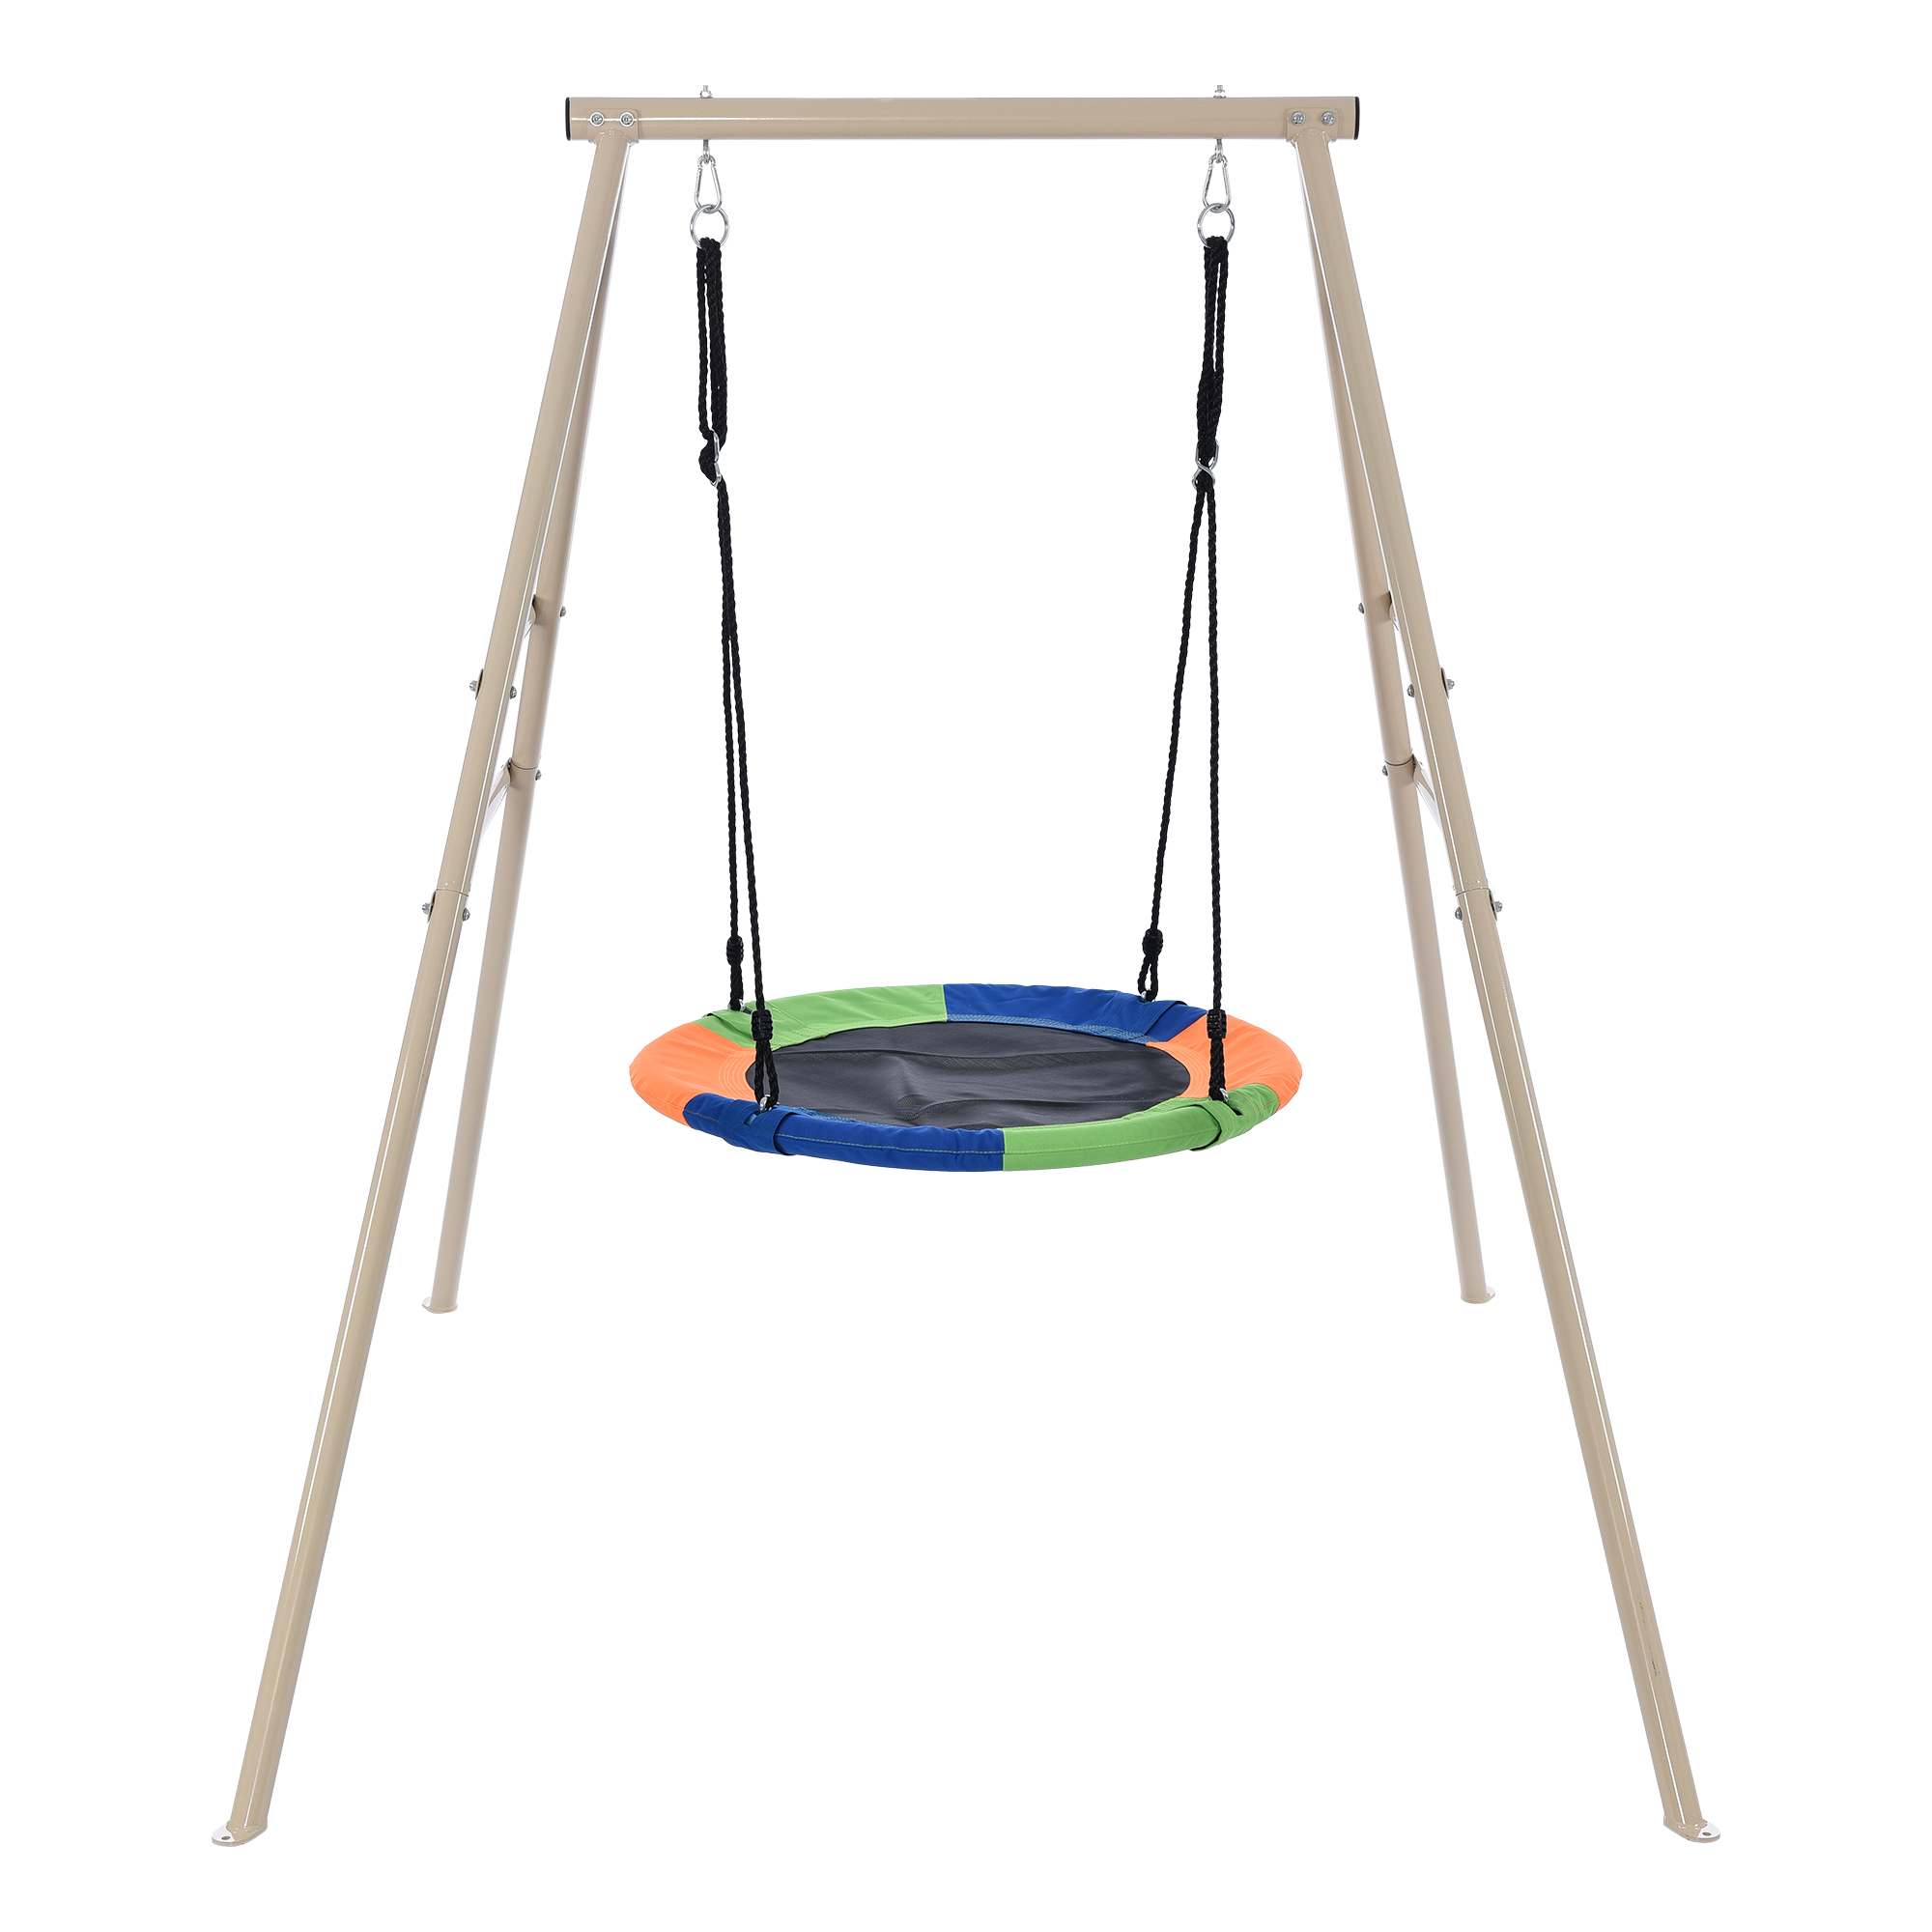 ブランコ 鉄棒ブランコ 組み立て簡単 子供遊び 庭 耐荷重150kg さか